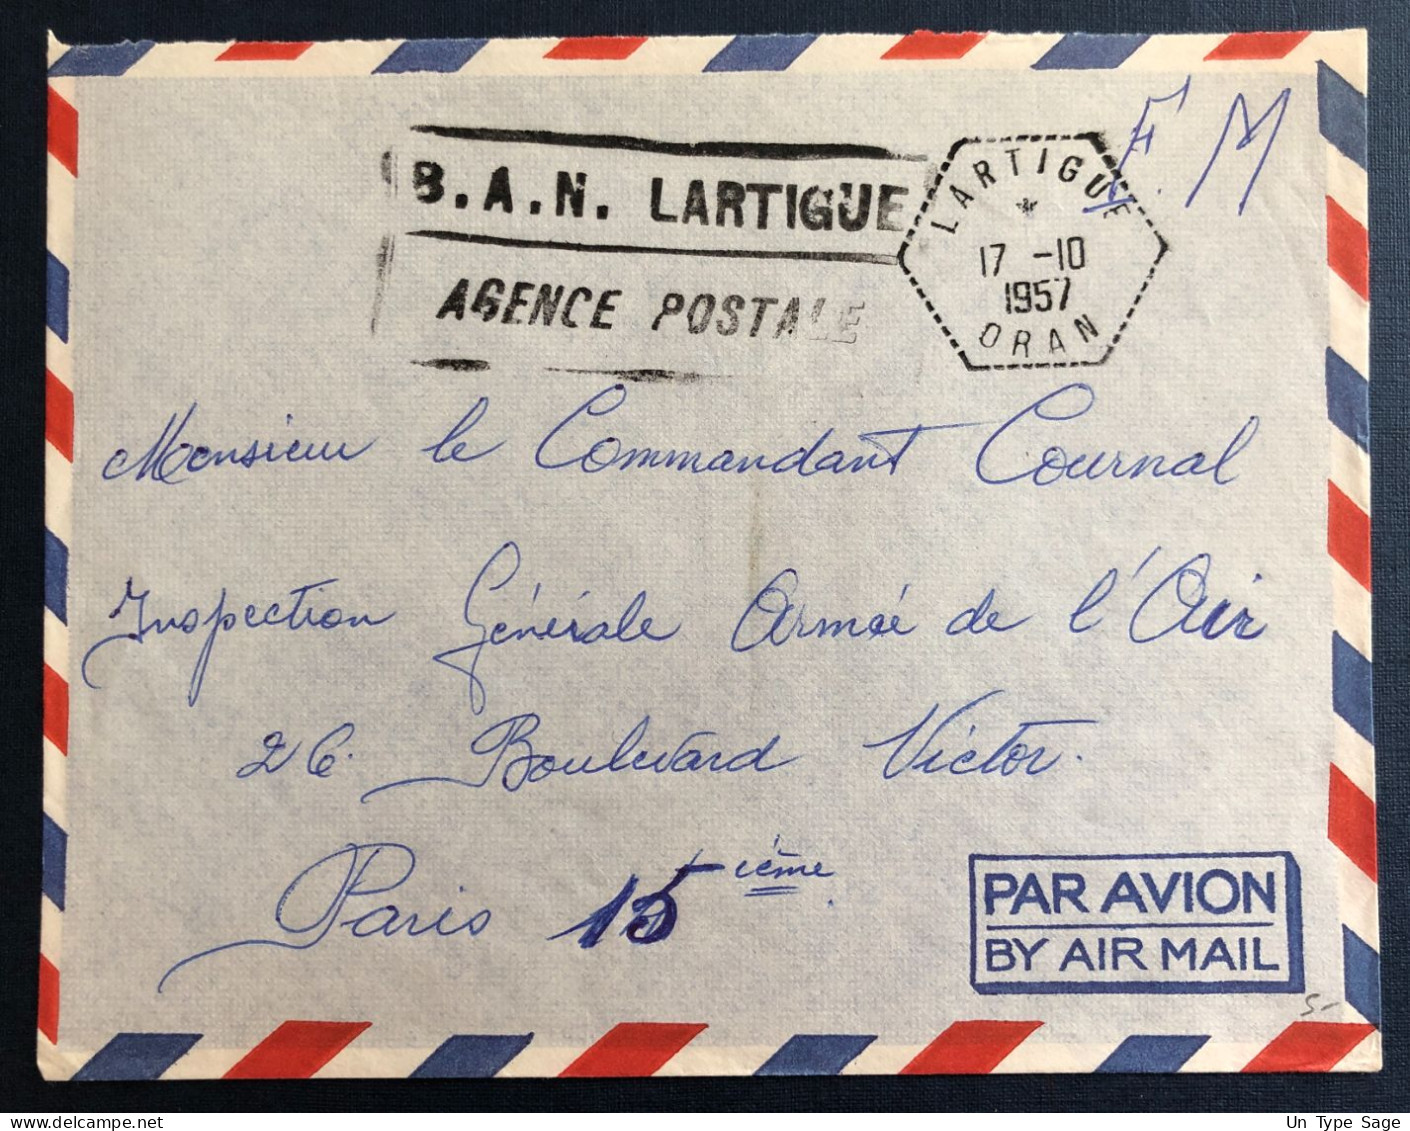 Algérie, Sur Enveloppe TAD Lartigue, Oran 17.10.1957 + Griffe B.A.N. LARTIGUE / AGENCE POSTALE - (B3349) - Brieven En Documenten